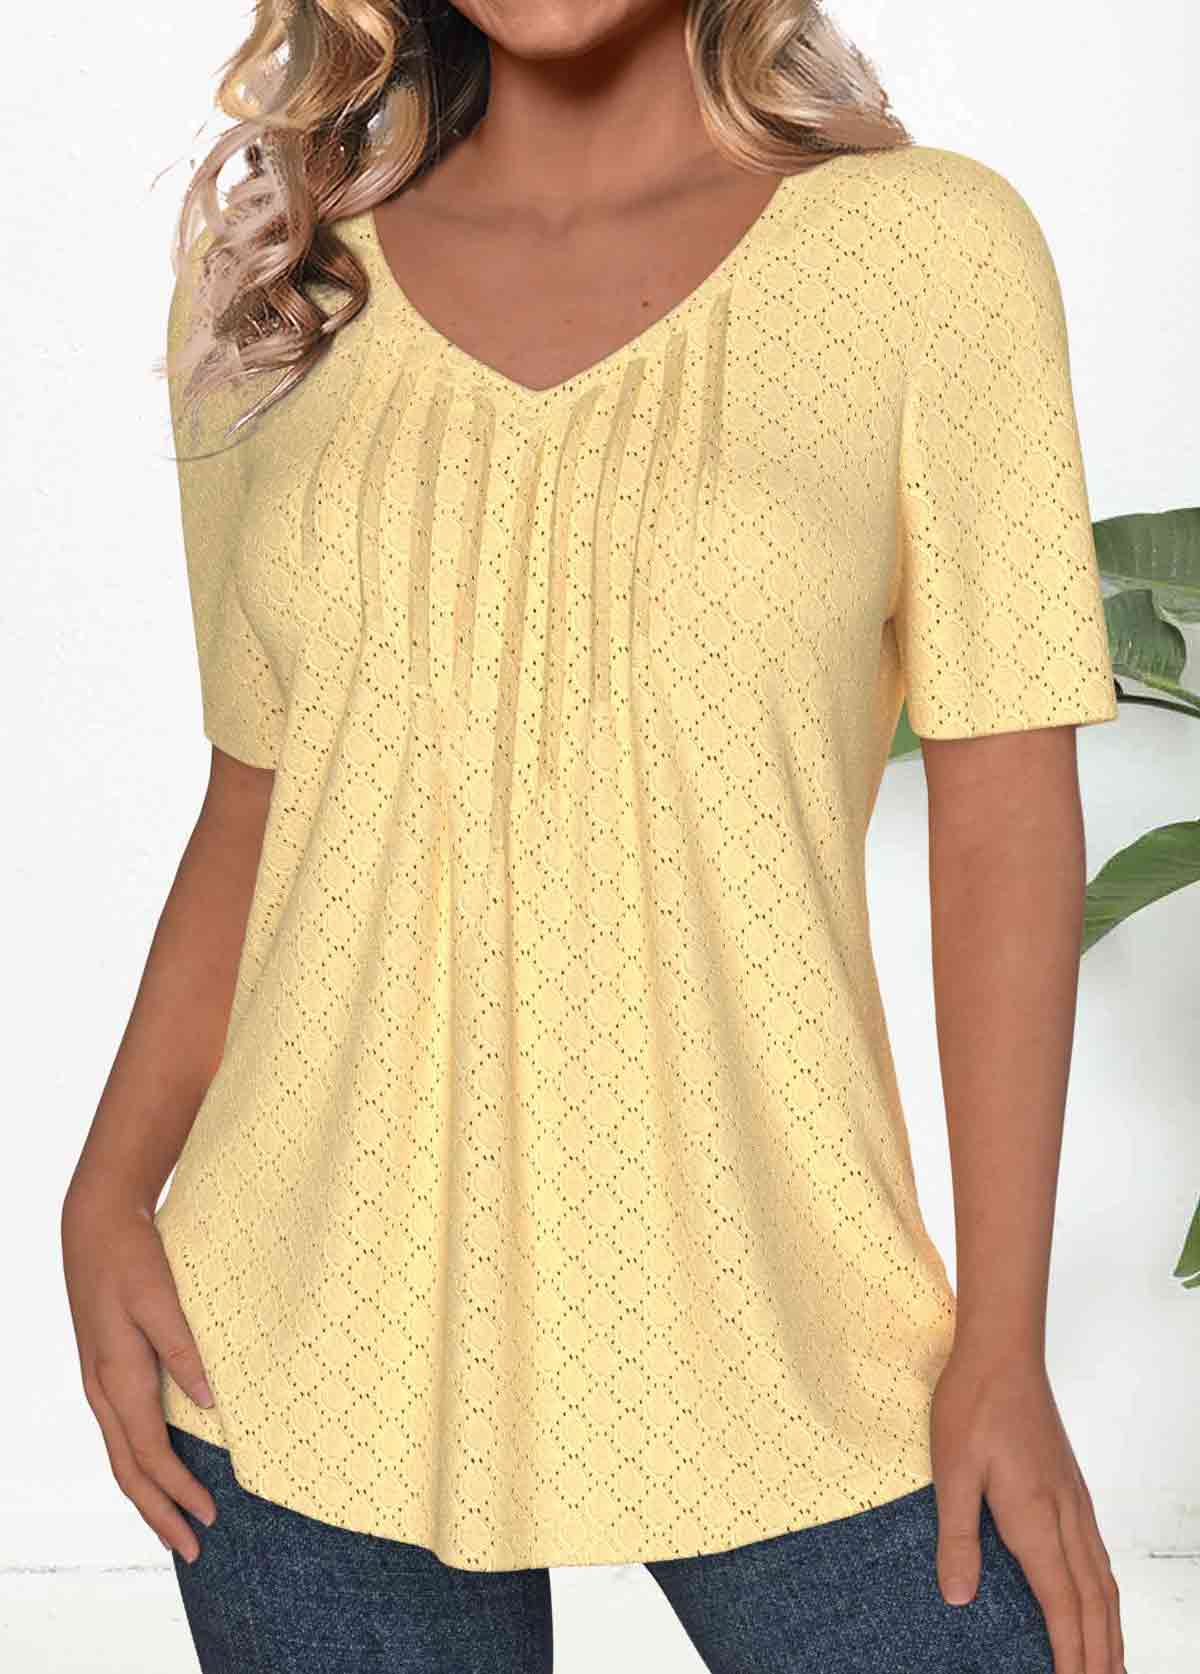 Textured Fabric Light Yellow Short Sleeve T Shirt